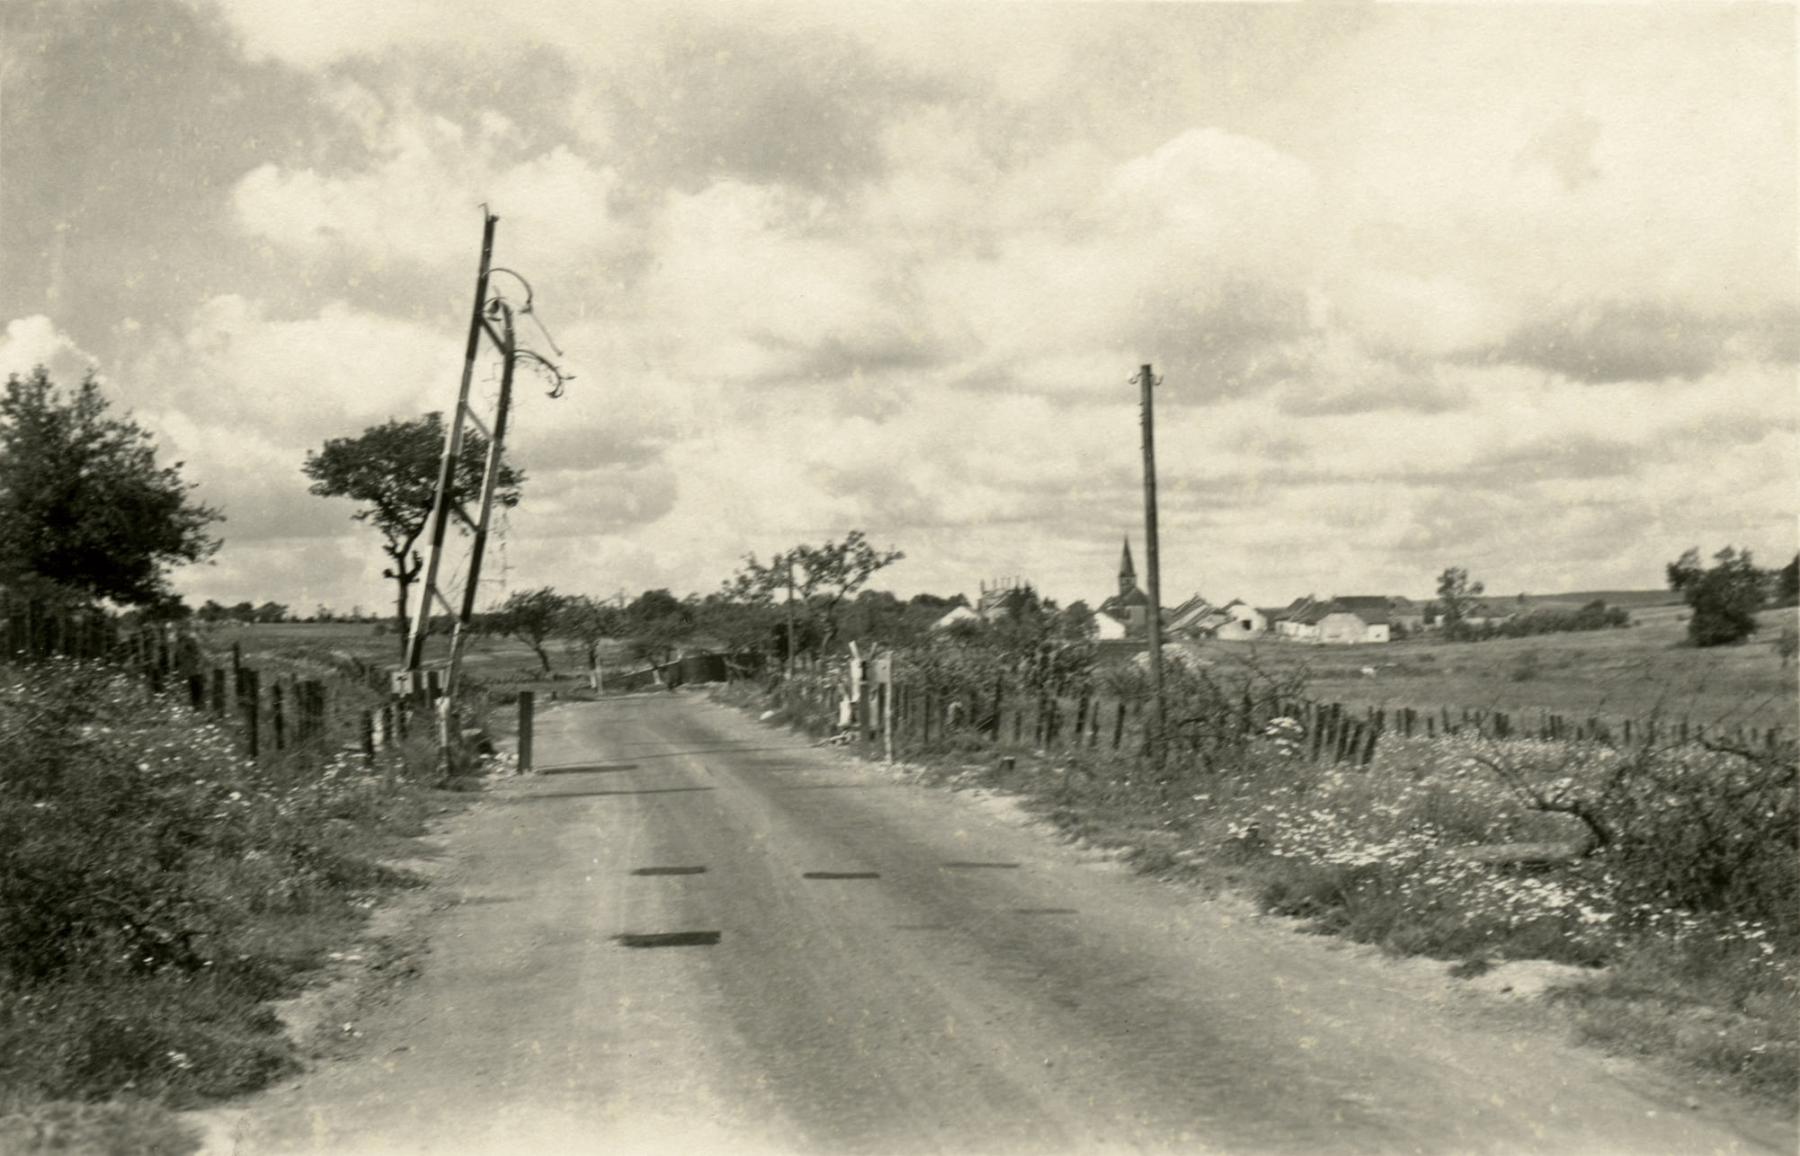 Ligne Maginot - BIDING EST - (Barrage de Route) - La barrière de route, le village de Biding est visible à l'arrière plan. 
La photo est prise après juin 40